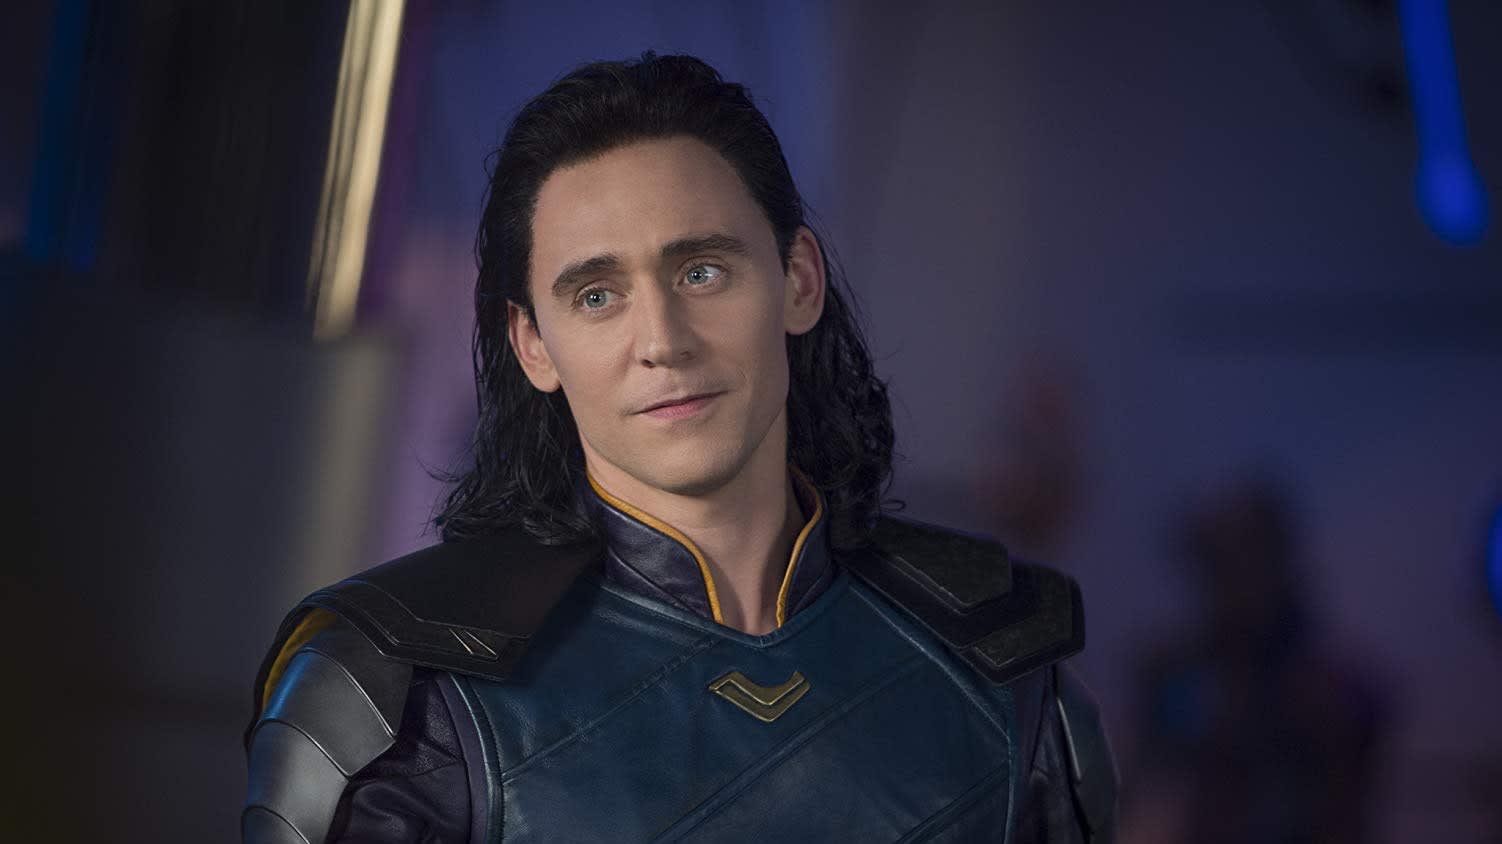 Marvel's 'Loki' series will debut on Disney+ starting June 11